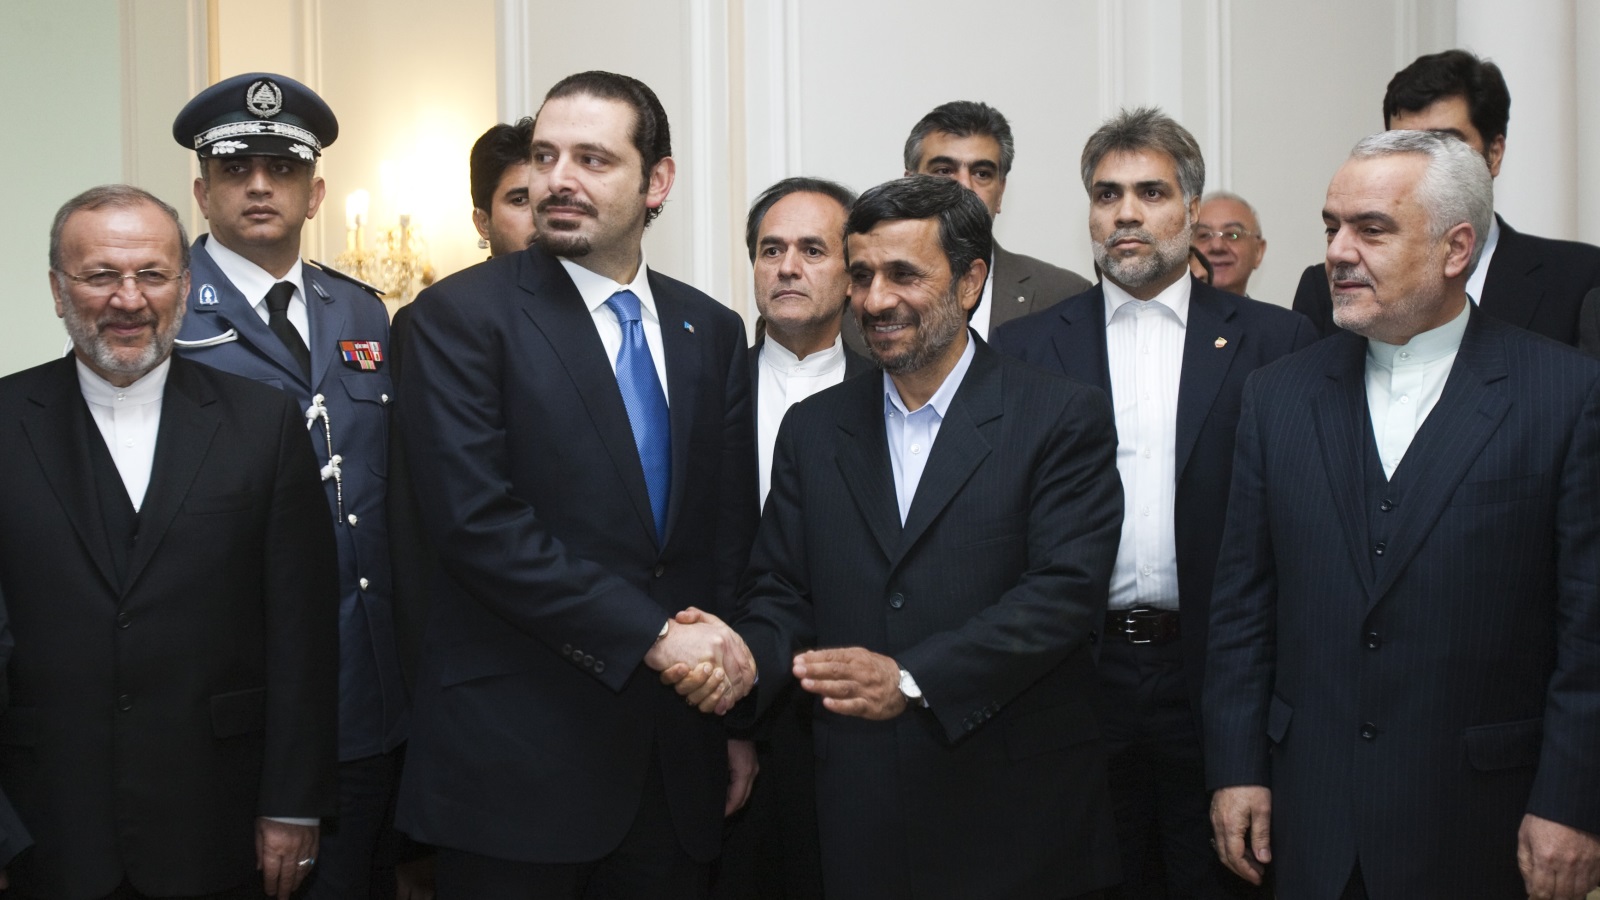 صورة تجمع سعد الحريري ومحمود نجاد خلال الزيارات المتبادلة بينهم 2010  (رويترز)